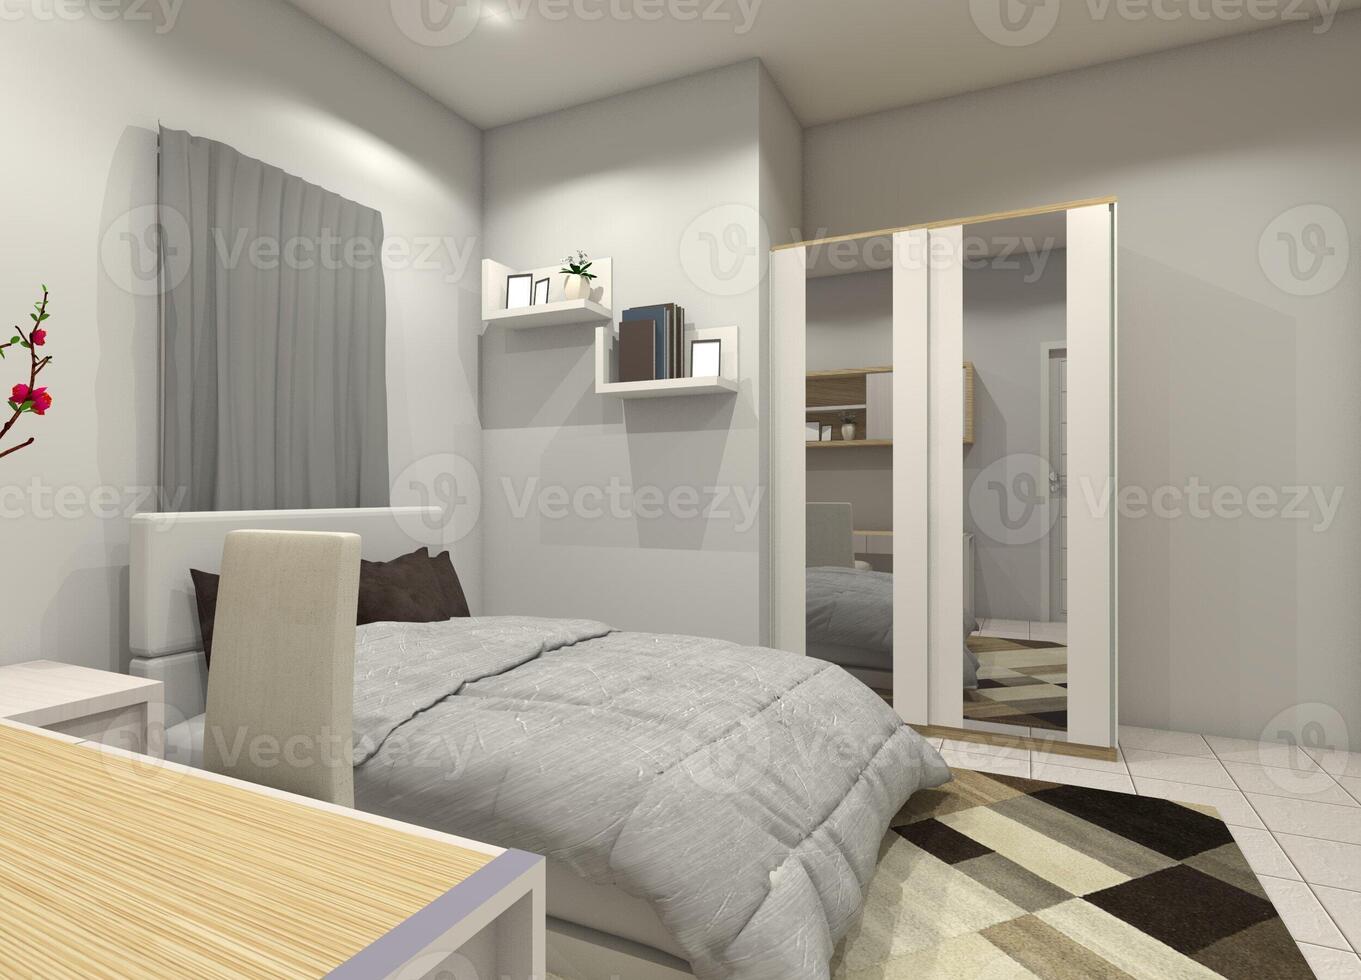 moderno y cómodo dormitorio diseño con ropa guardarropa gabinete, 3d ilustración foto